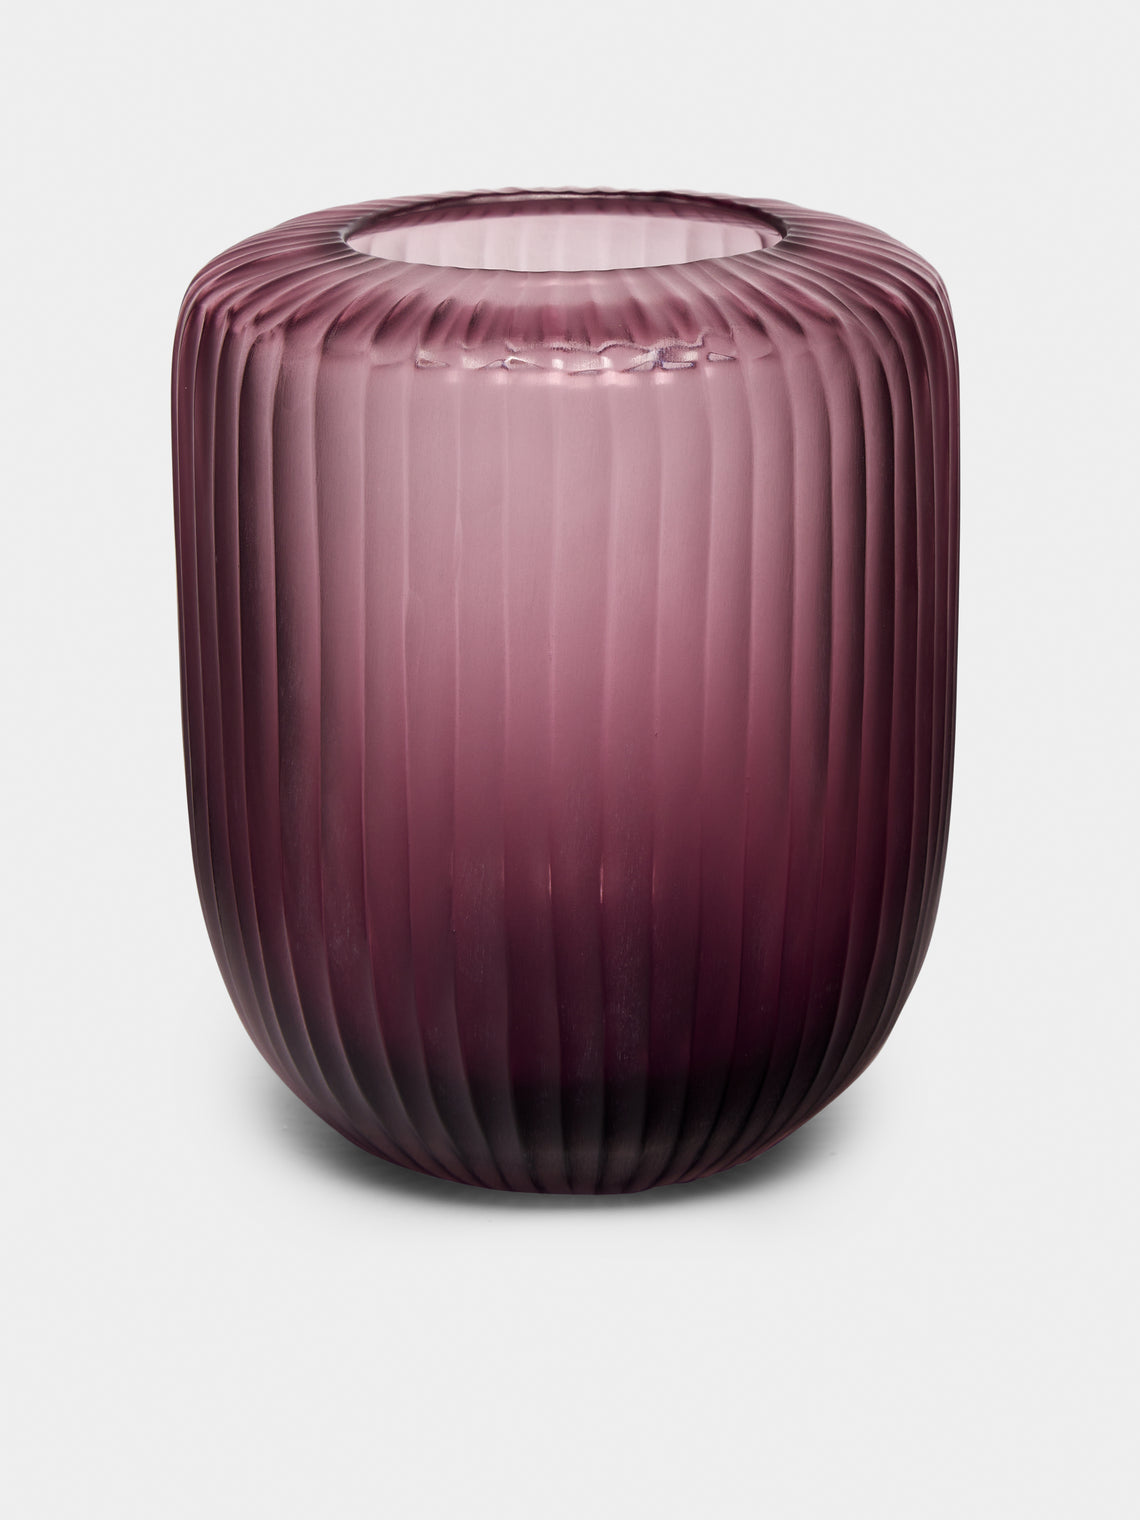 Micheluzzi Glass - Rullo Ametista Hand-Blown Murano Glass Vase - Purple - ABASK - 